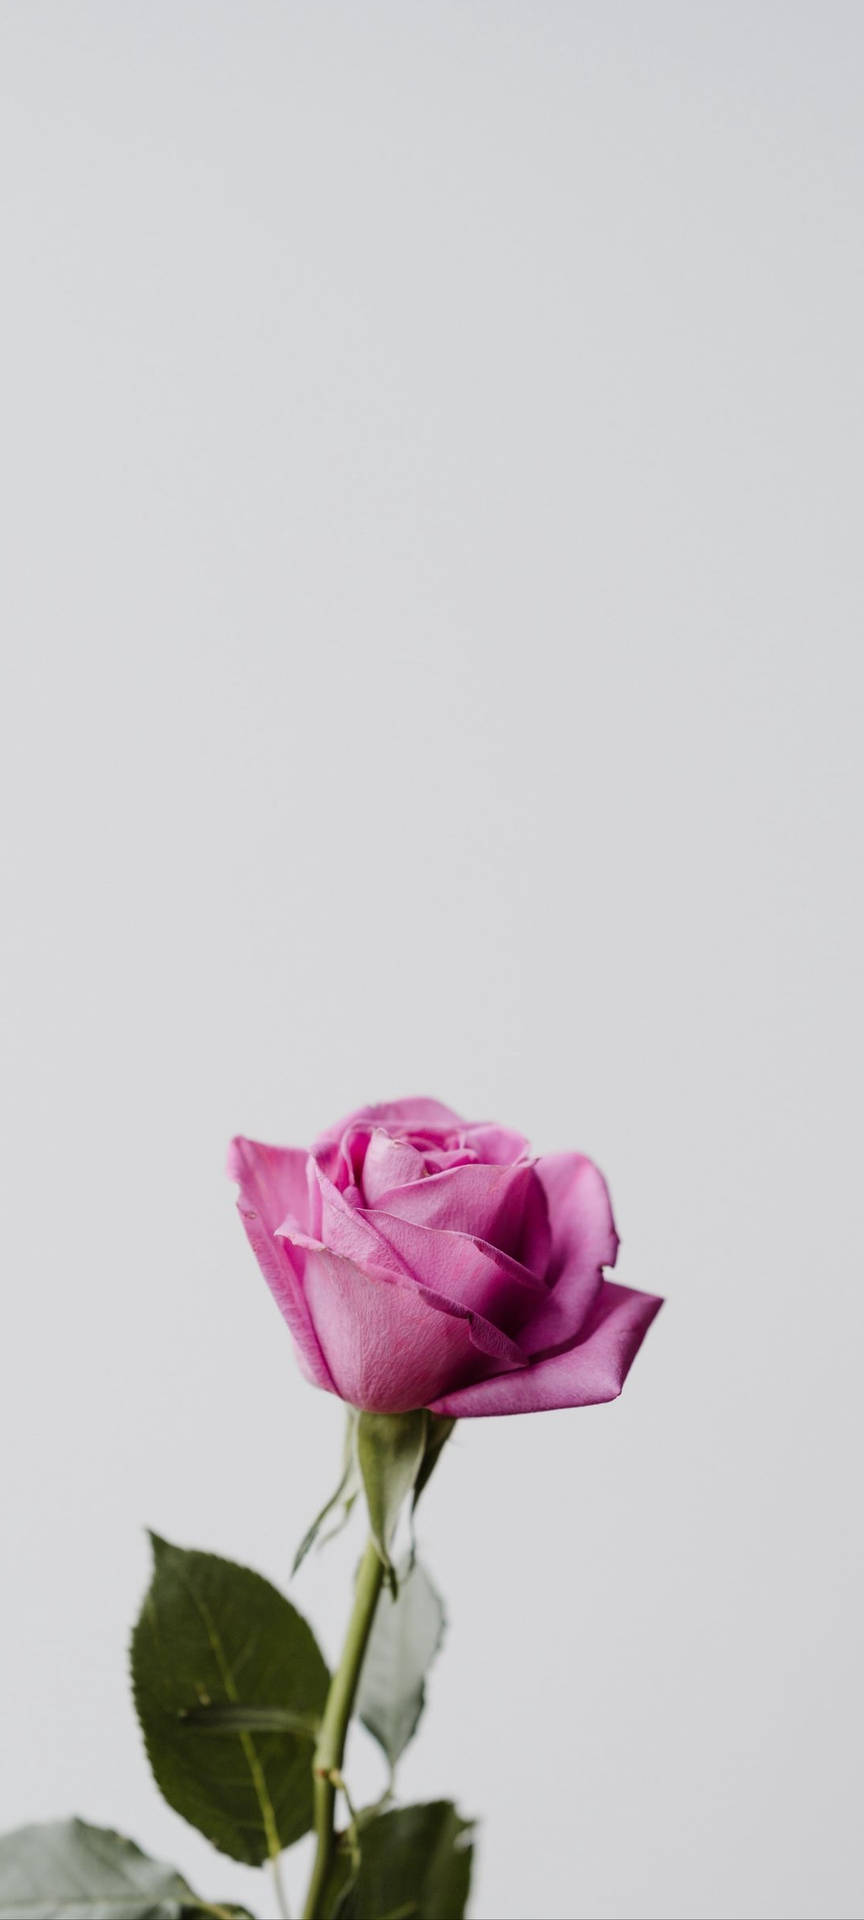 Redminote 10 - Rosa Pink Rose Wallpaper